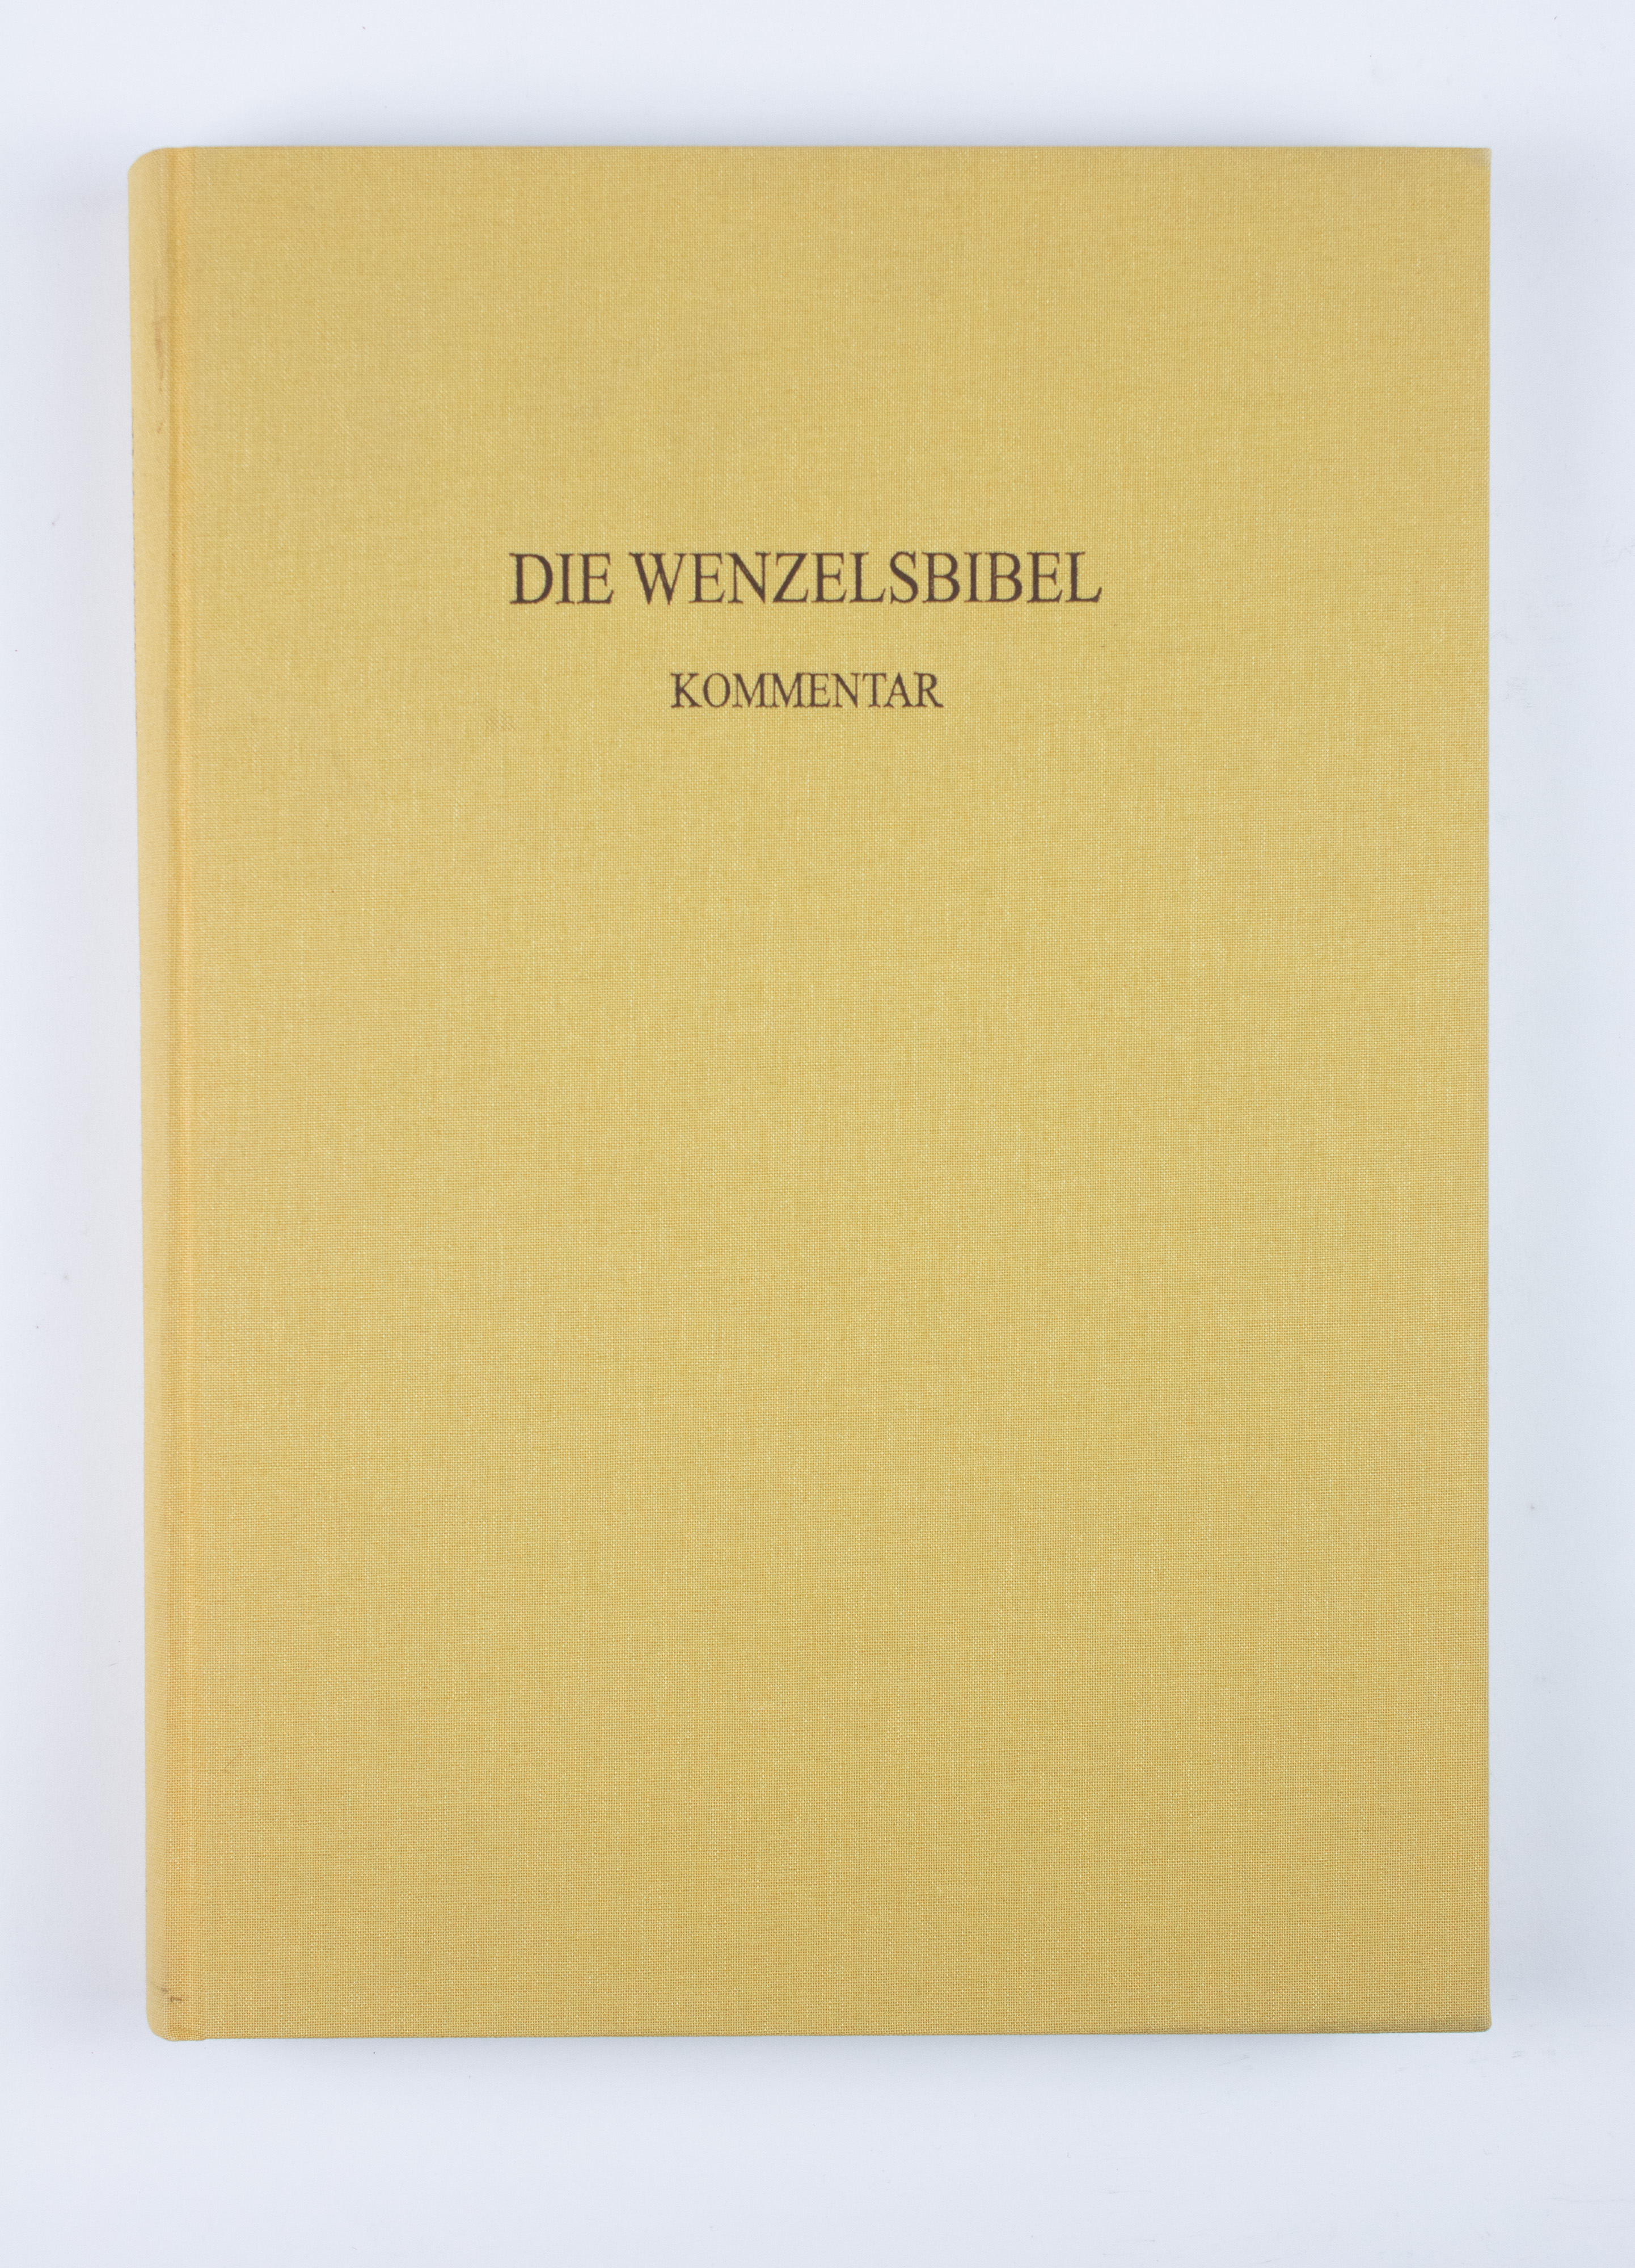 Wenzelsbibel - Image 6 of 10